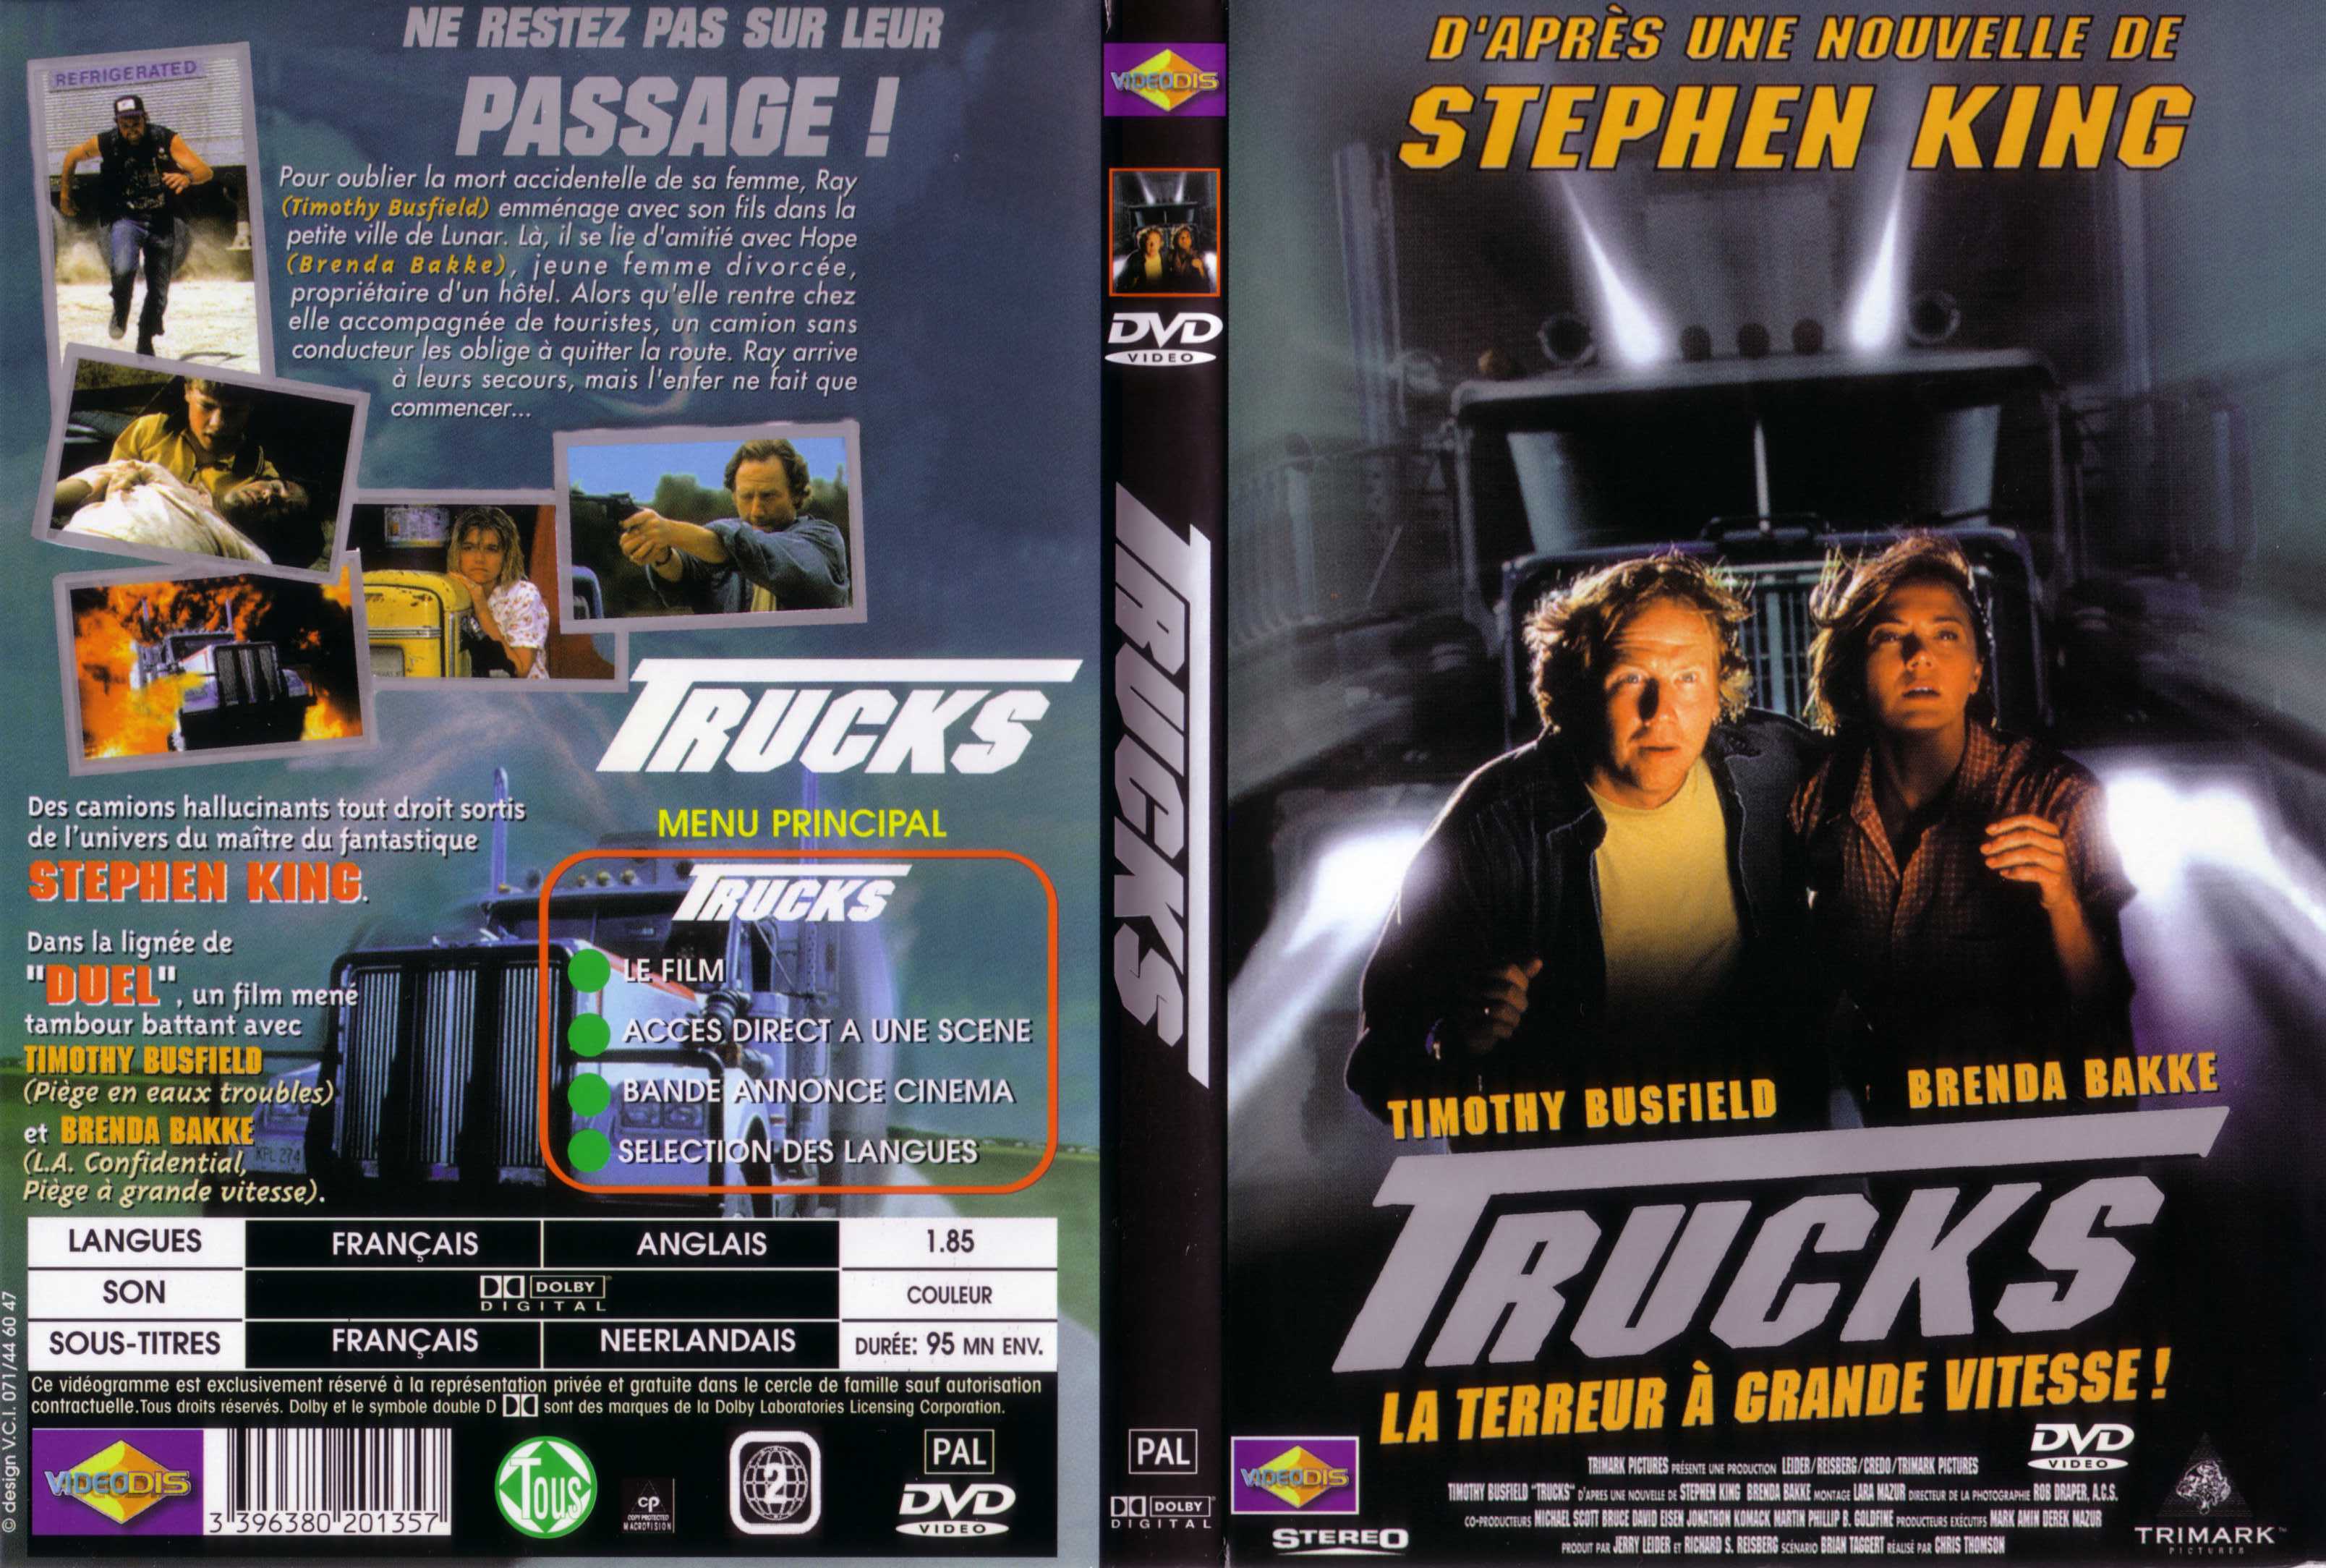 Jaquette DVD Trucks v2